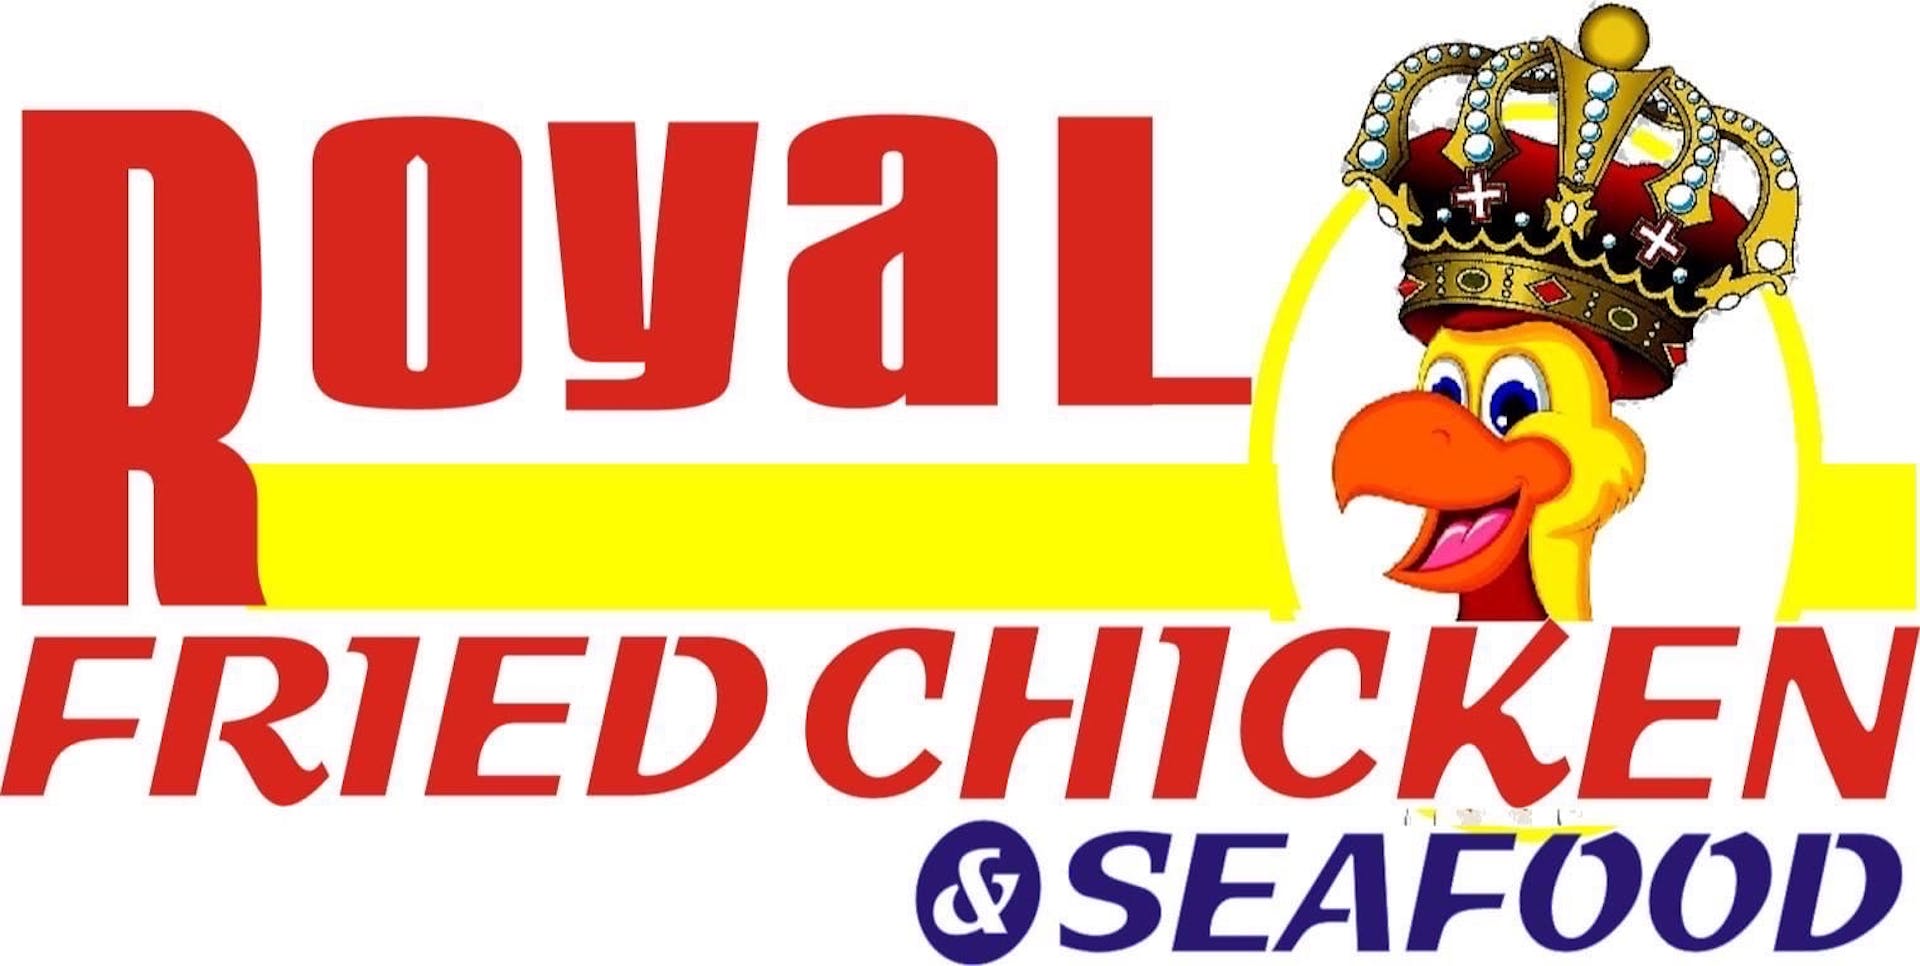 Royal Fried Chicken